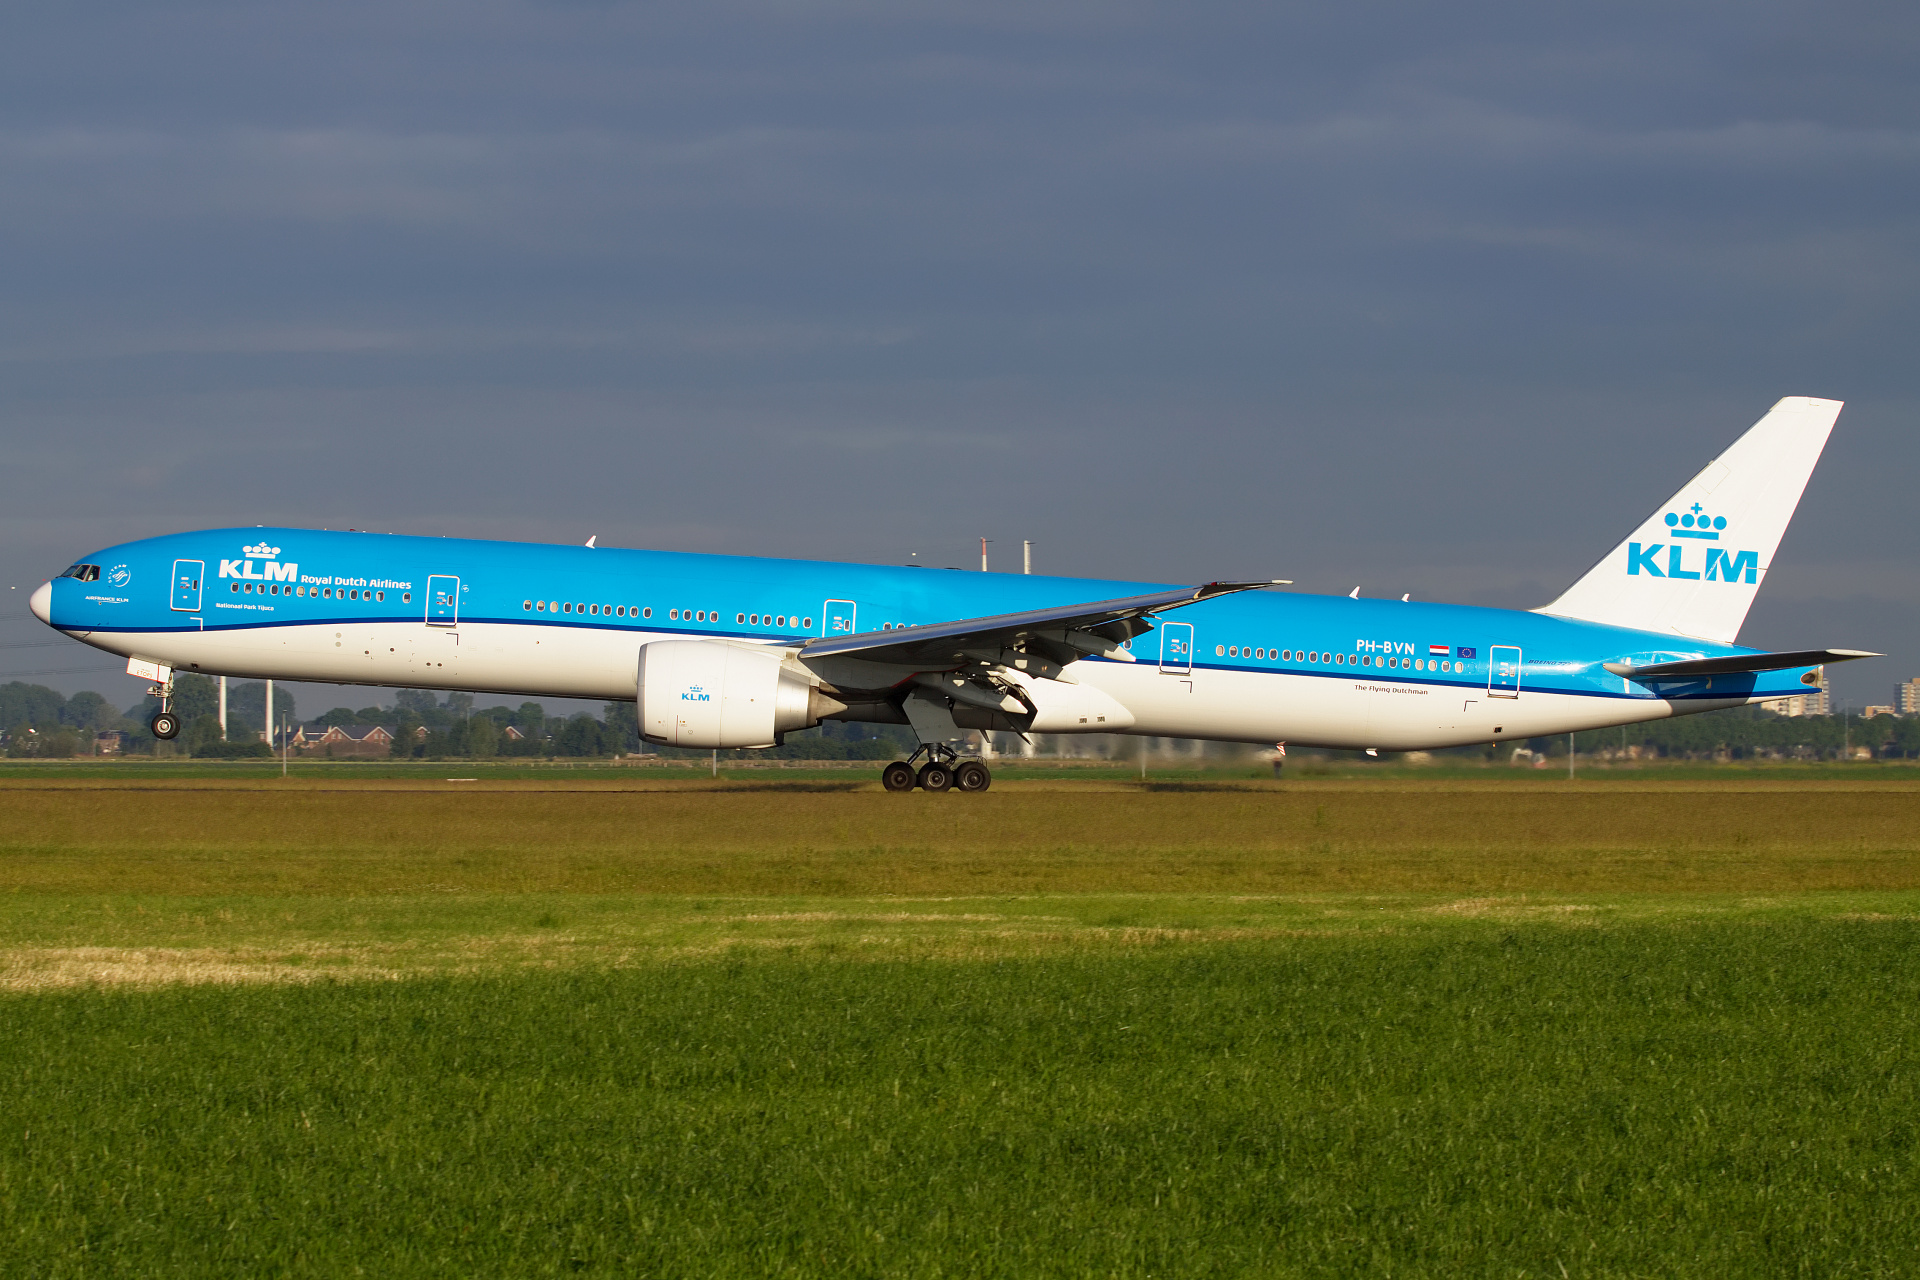 PH-BVN (Aircraft » Schiphol Spotting » Boeing 777-300ER » KLM Royal Dutch Airlines)